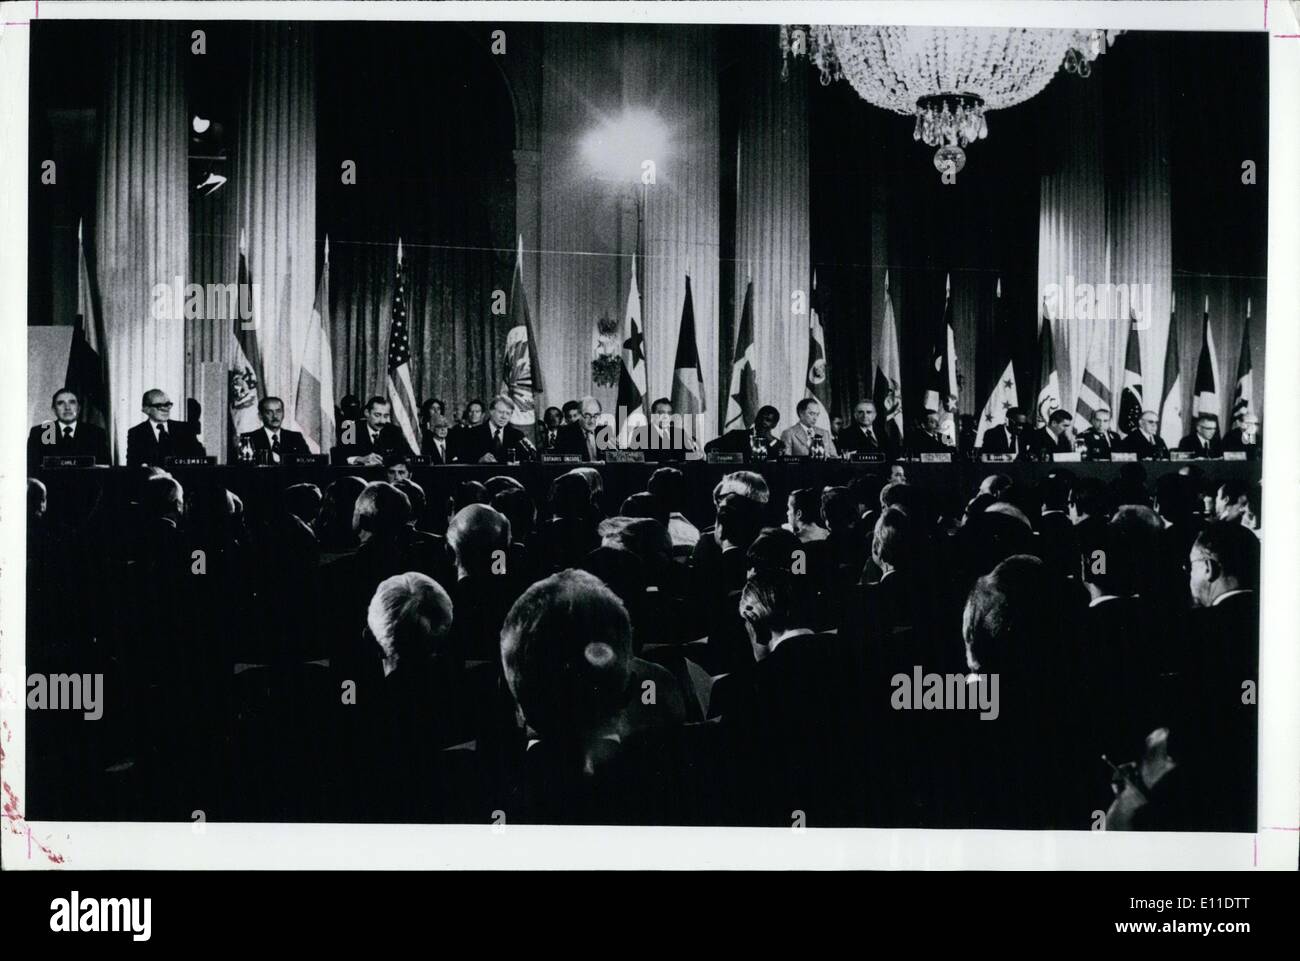 Septembre 07, 1977 - Signature du Traité du Canal de Panama - La Salle des Amériques, au siège de l'OEA, le foyer de la Présidents et chefs d'État du continent à l'occasion de la signature de traités relatifs au Canal de Panama. Présidé par le Secrétaire général de l'OEA, M. Alejandro Orfila et a également assisté par le président Carter et le général Torrijos, vous pouvez voir les présidents d'Amérique et de ses représentants, chacun avec sa bagueurs, dans le cadre d'une réunion au sommet. Banque D'Images